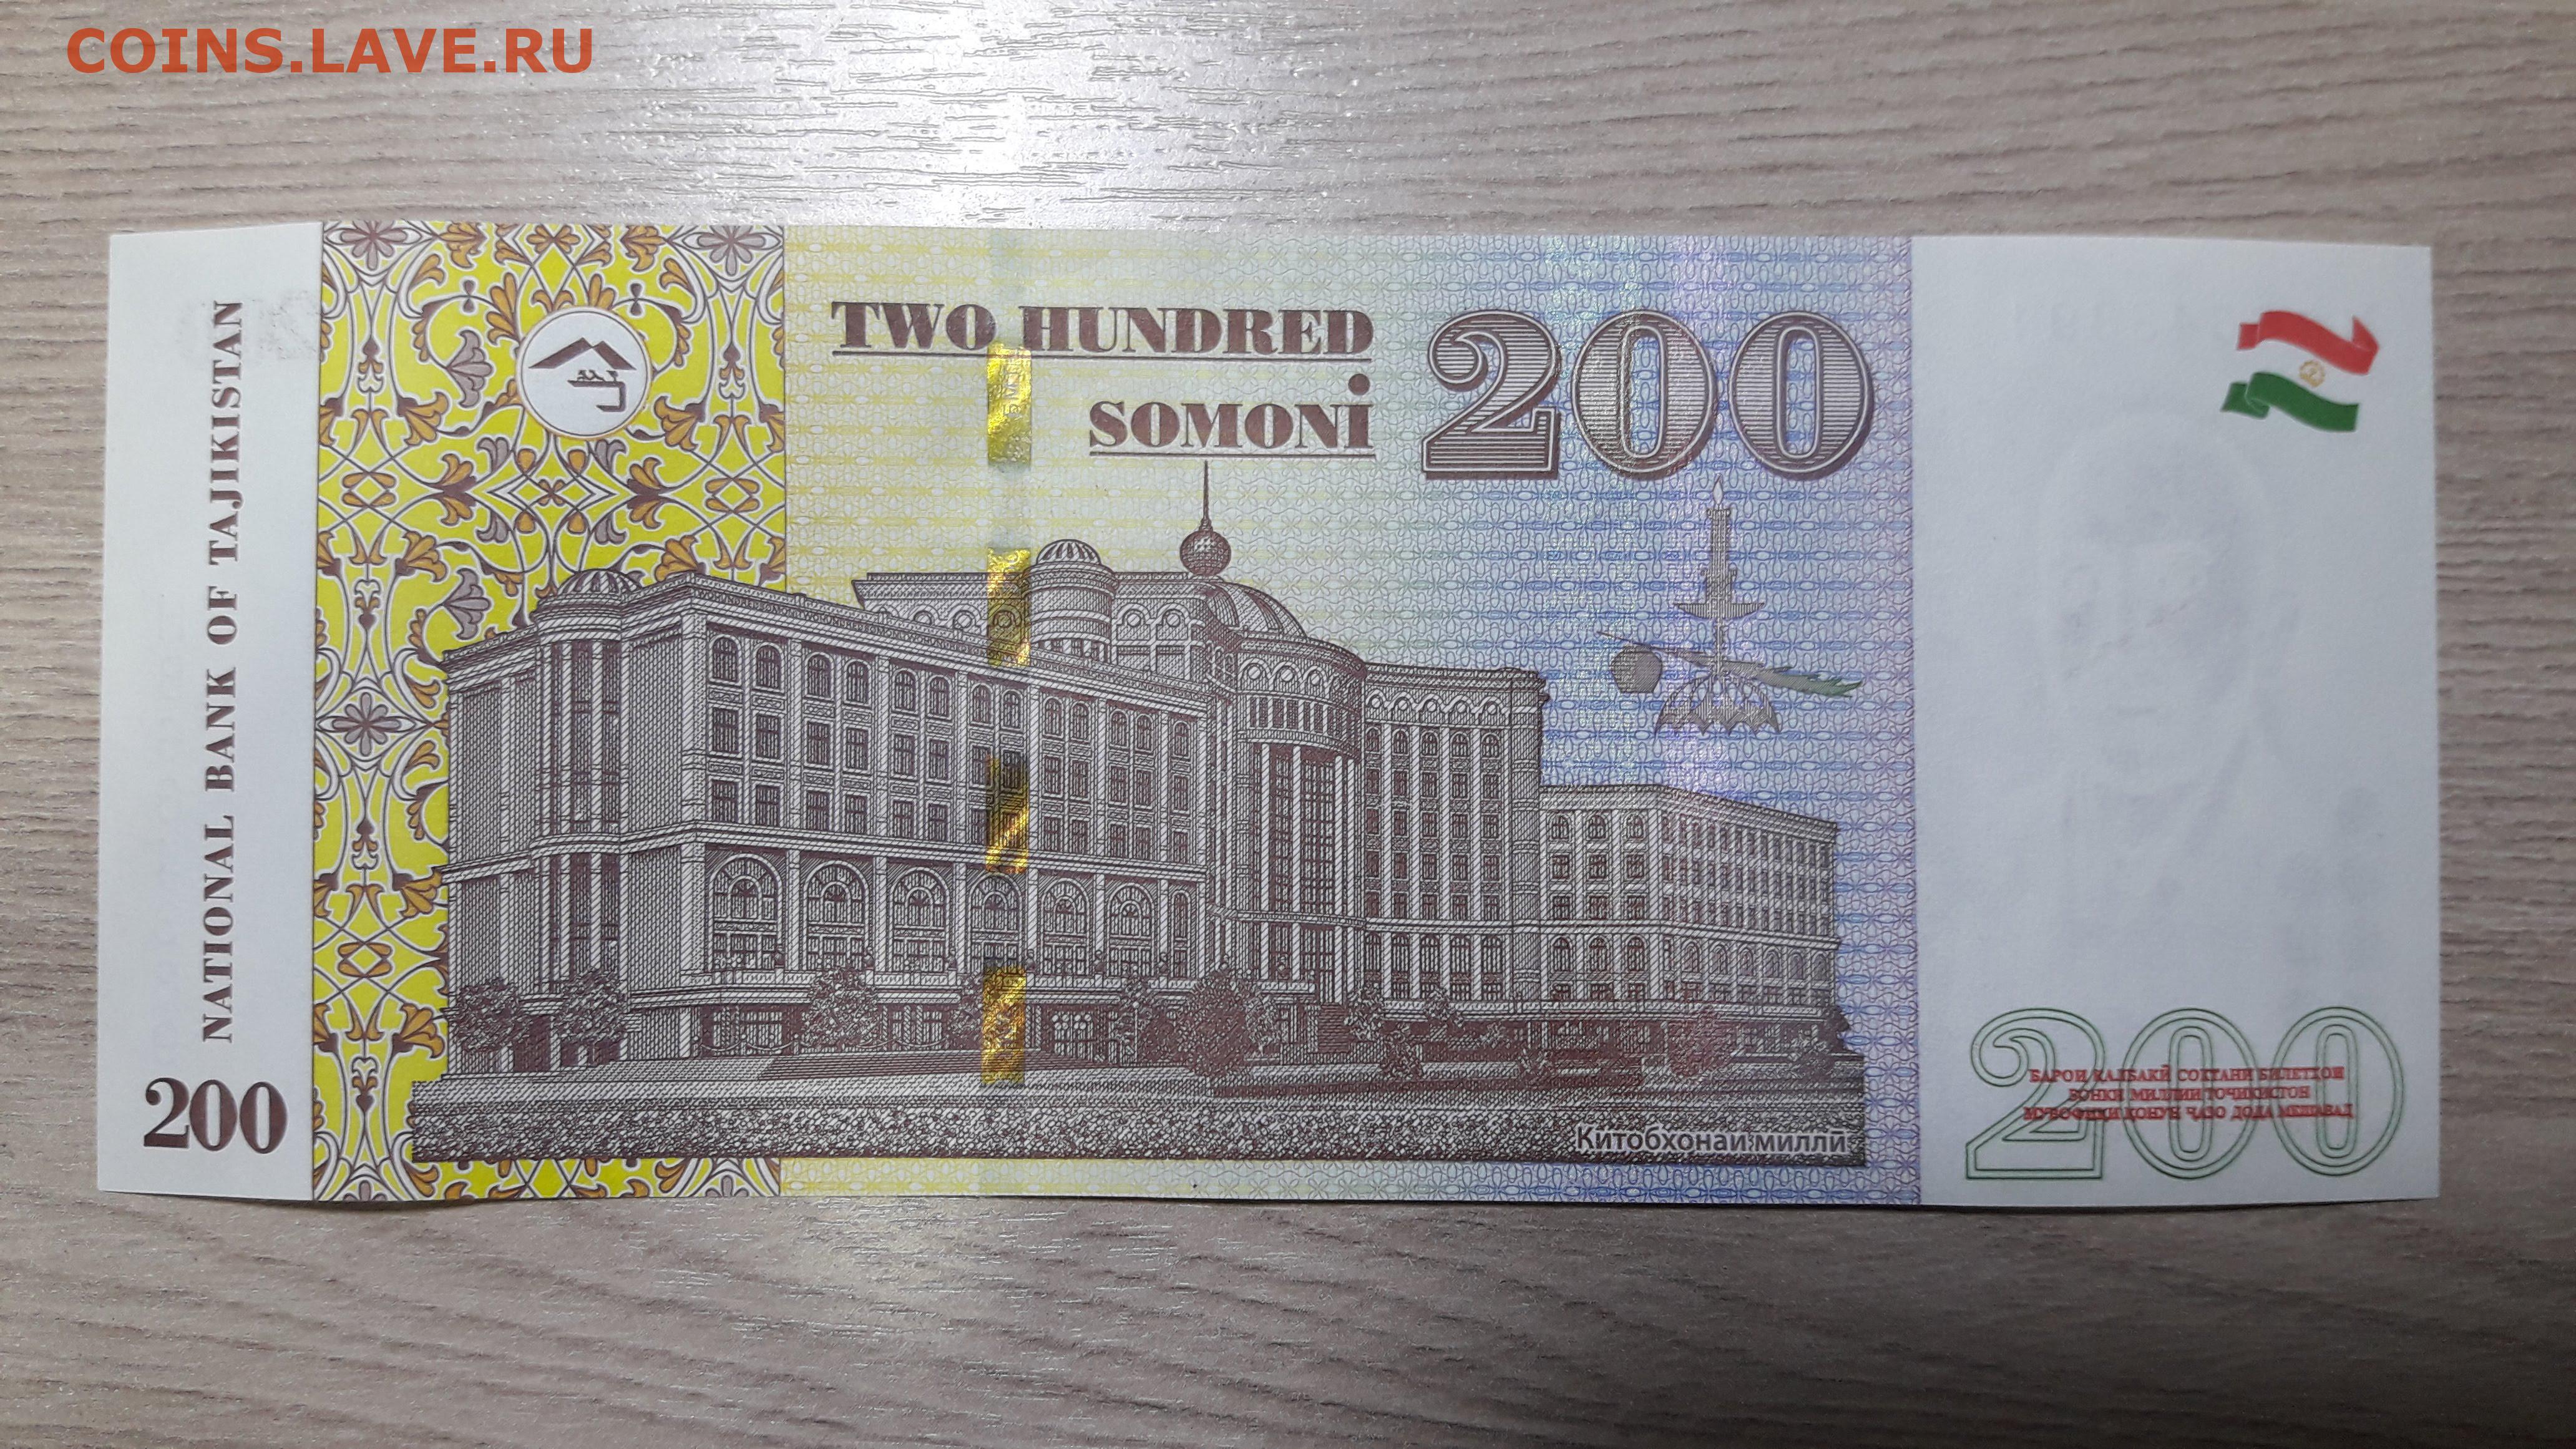 200 сомони в рублях. 200 Сомони. Купюра Сомони. Деньги Таджикистана. Купюра 10 Сомони.